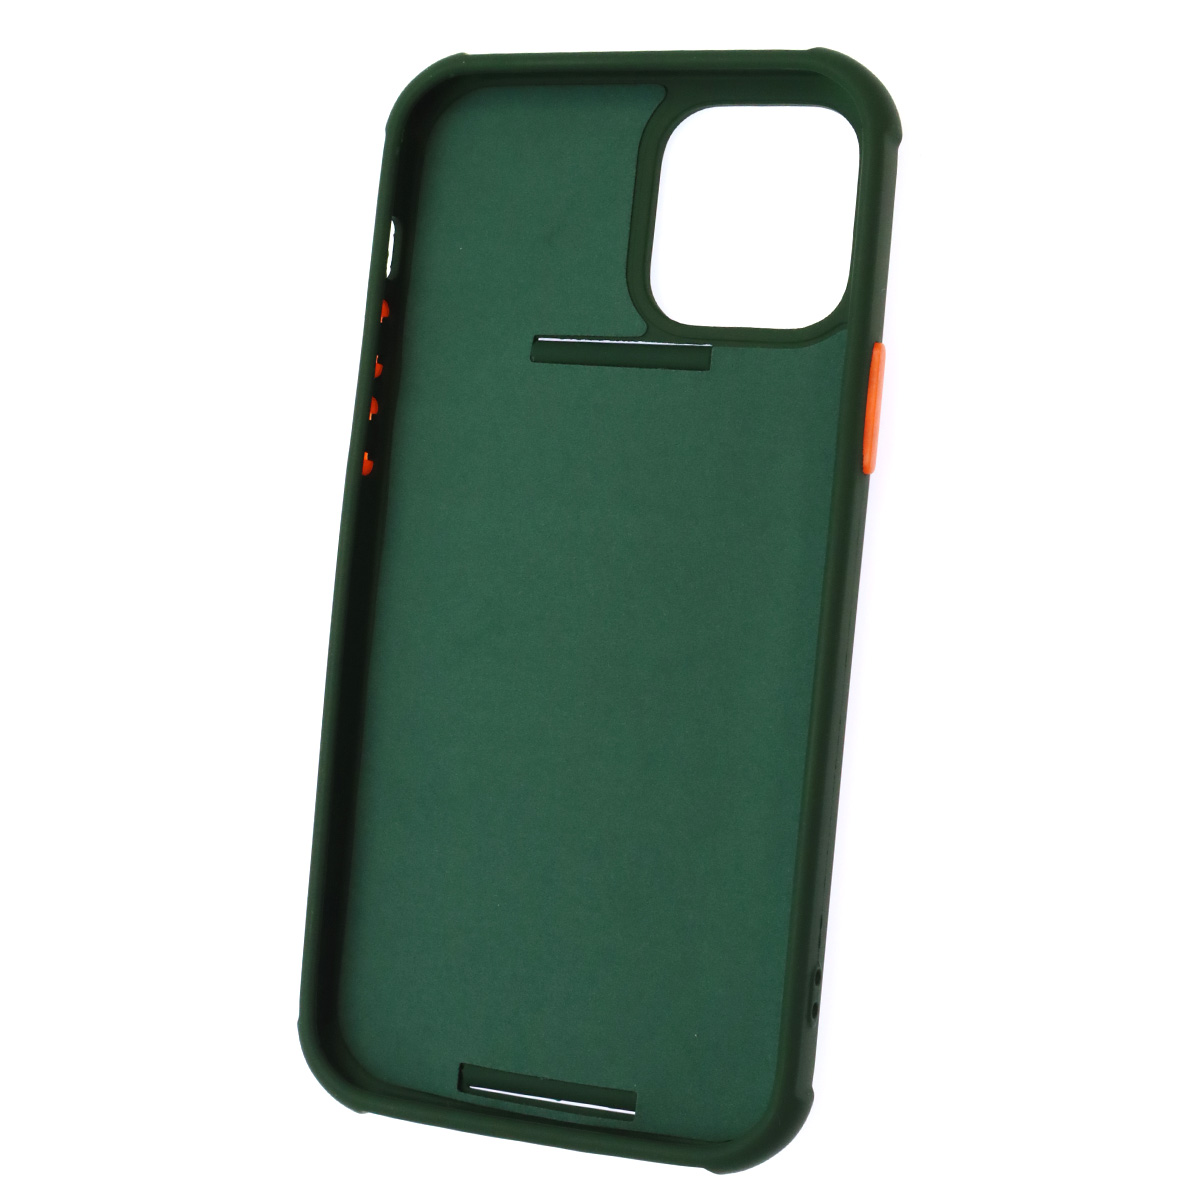 Чехол накладка LADDER NANO для APPLE iPhone 12, iPhone 12 PRO (6.1), силикон, держатель, цвет темно зеленый